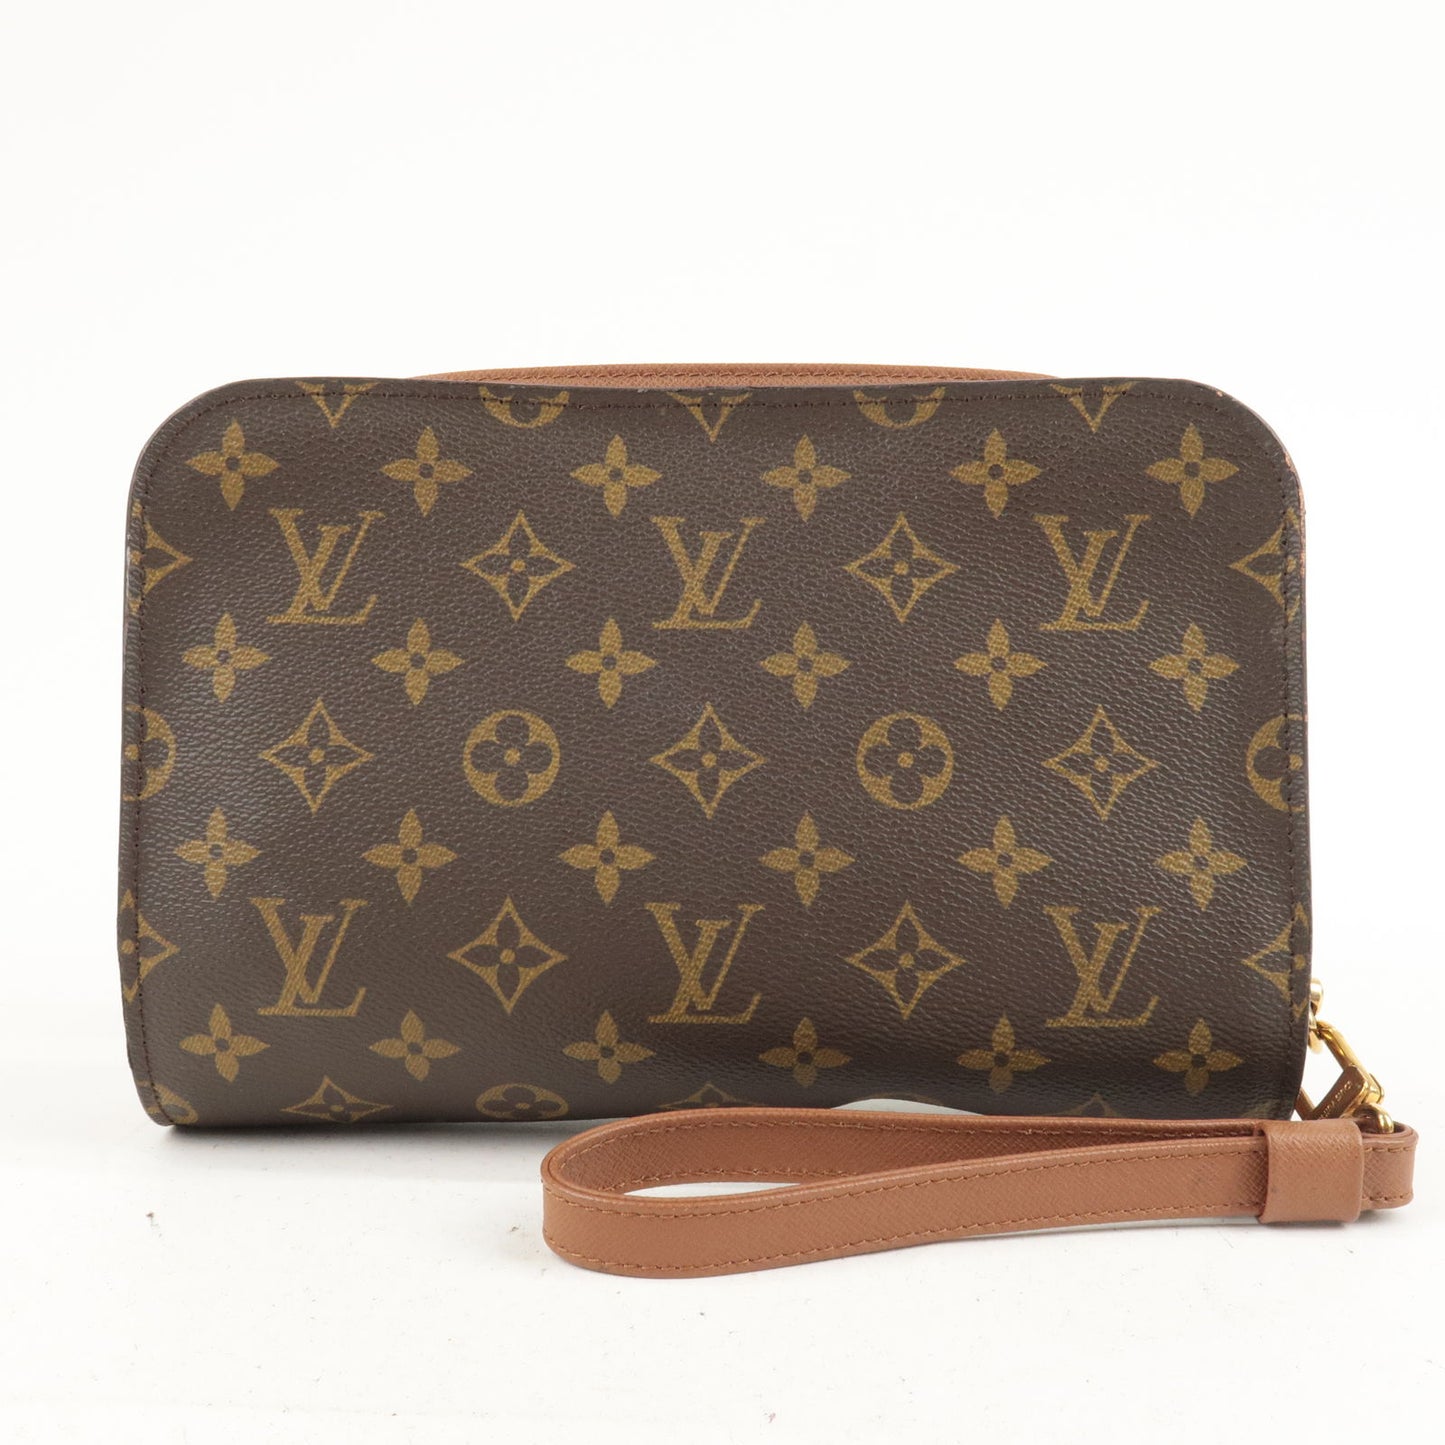 Louis Vuitton Damier Ebene Portobello Crossbody Bag in Brown | Lord & Taylor